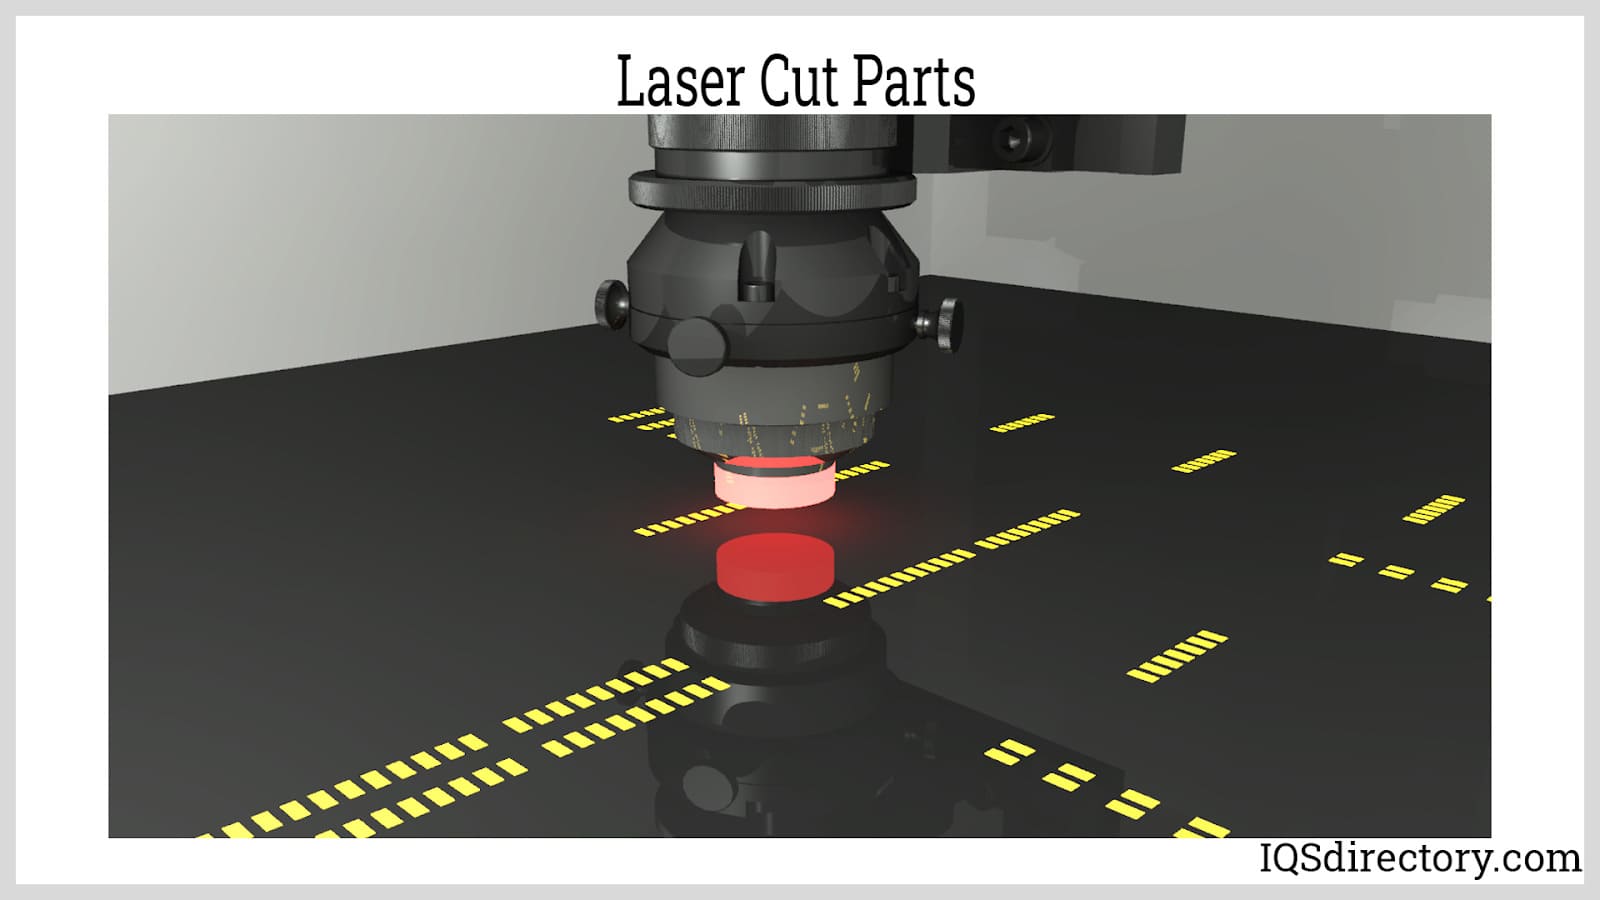 Laser Cut Parts